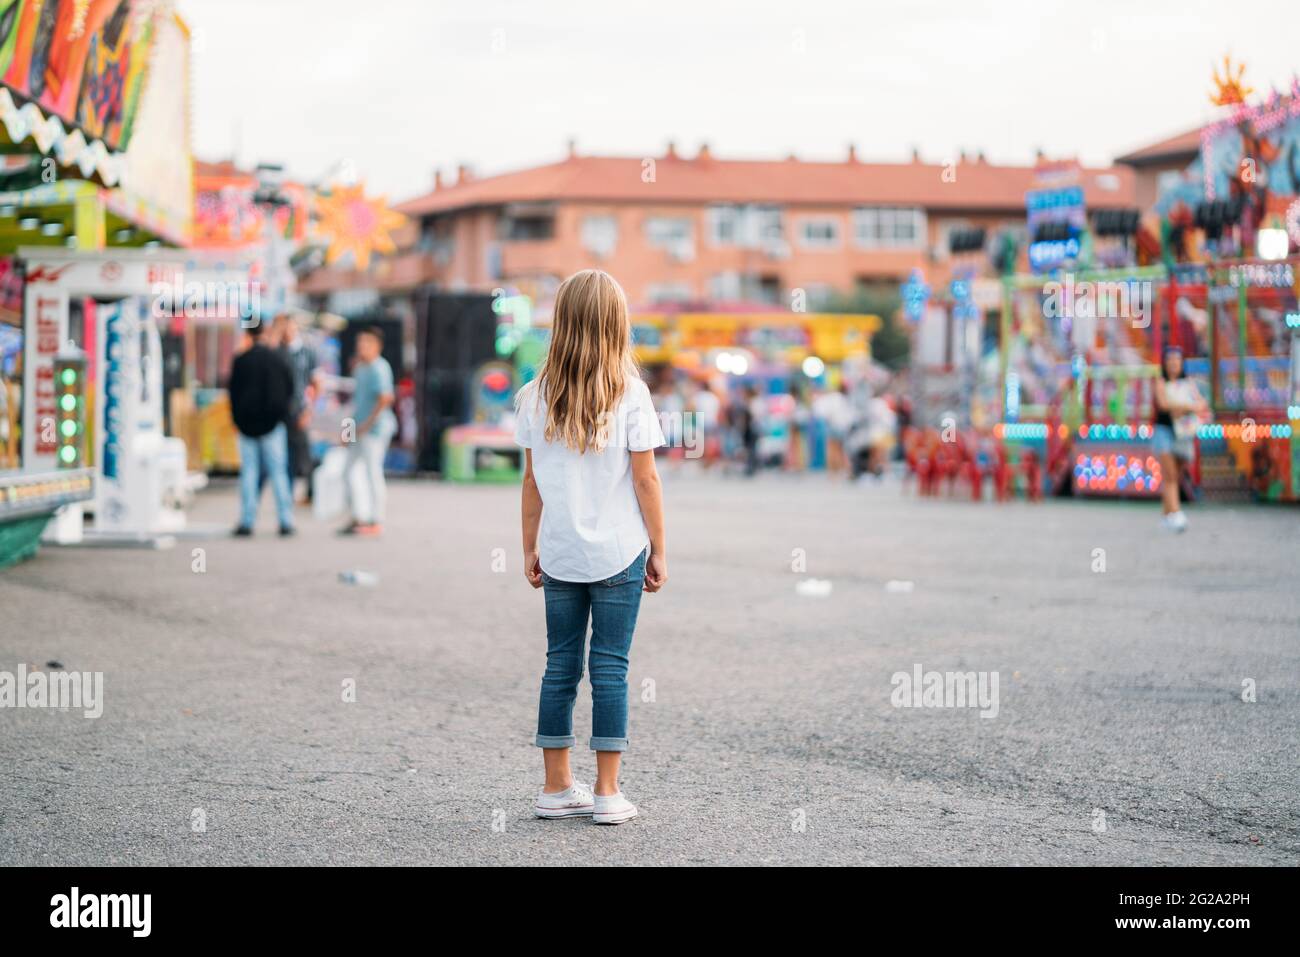 Rückansicht eines unerkennbaren kleinen Mädchens, das allein im Vergnügungspark steht Stockfoto